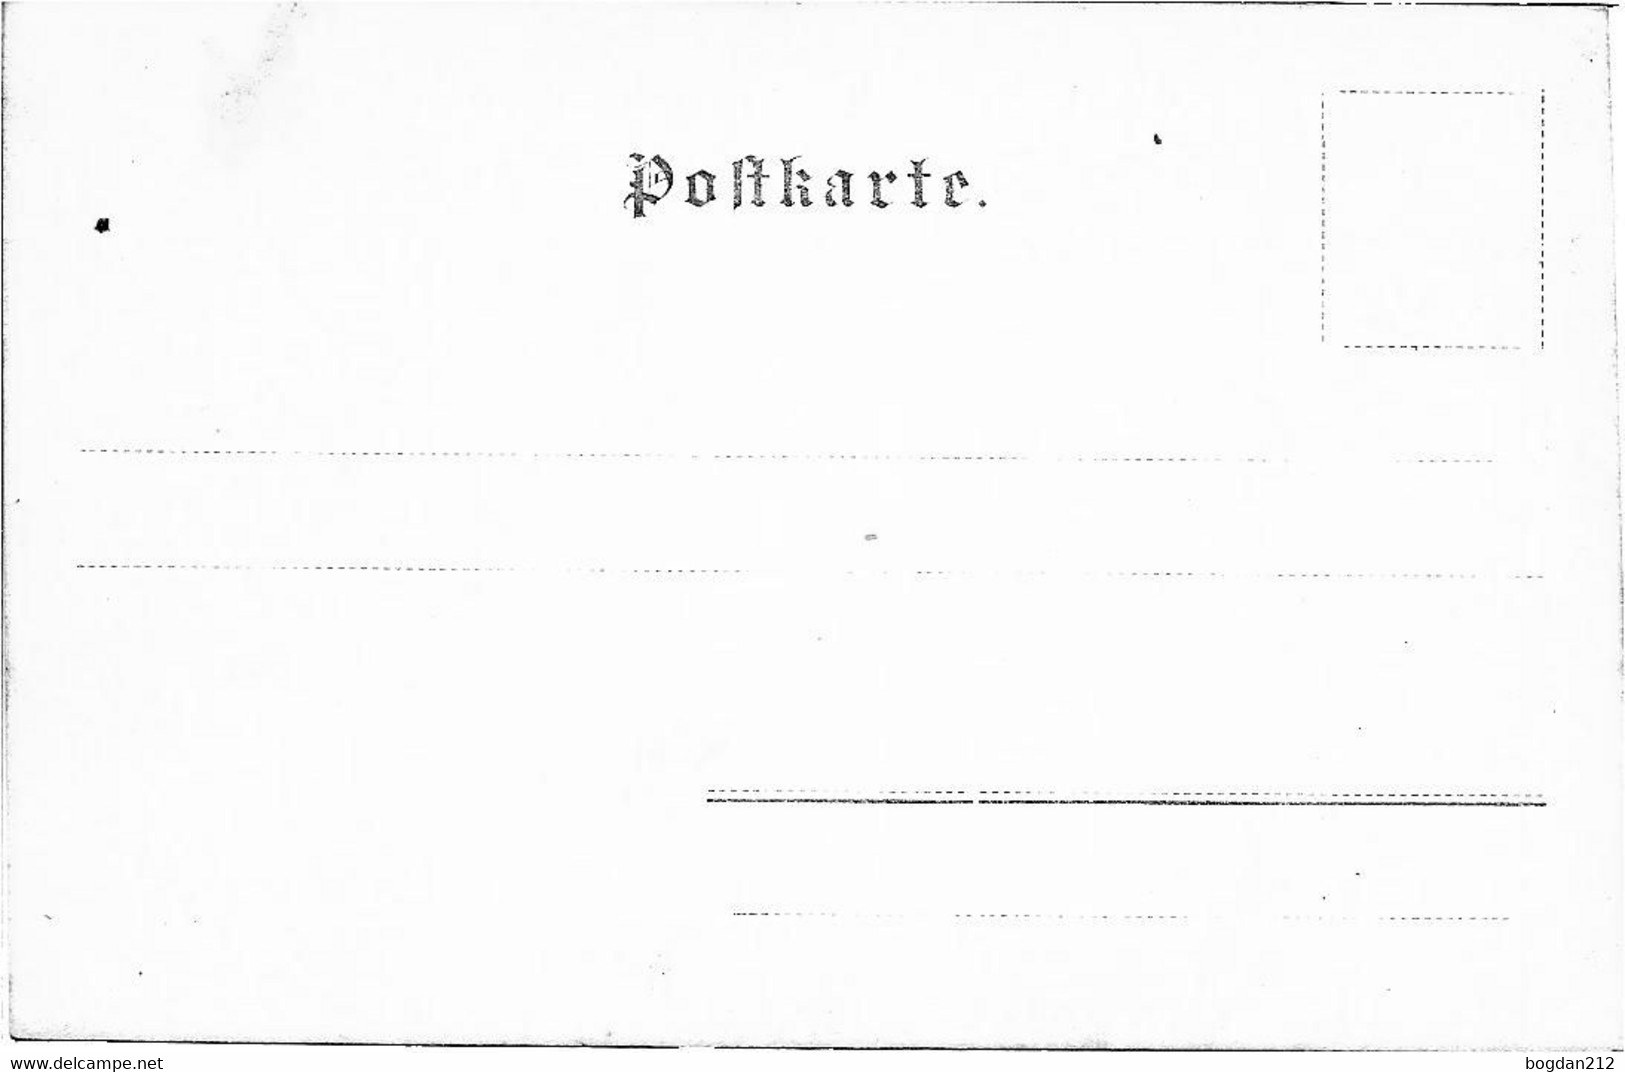 1900/05 - ABTENAU , Gute Zustand, 2 Scan - Abtenau